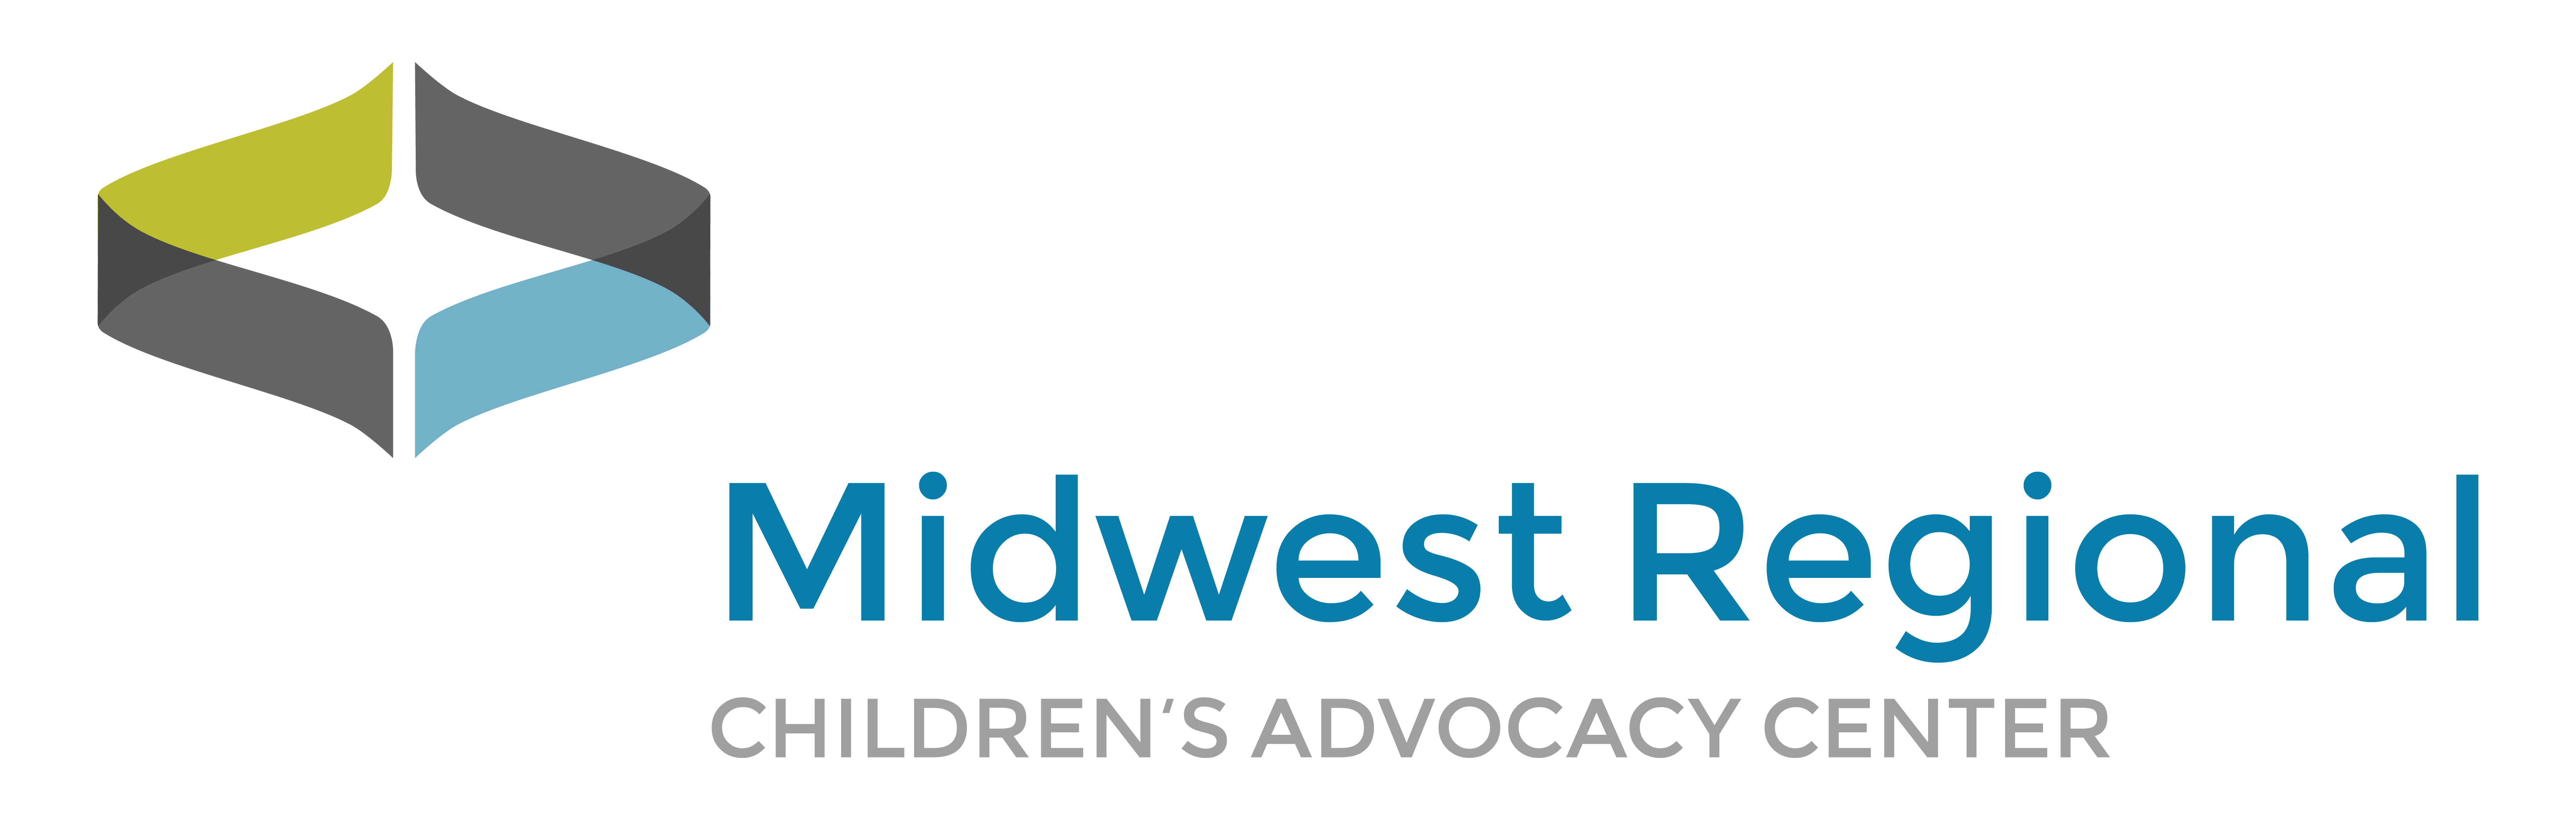 Midwest Regional Children's Advocacy Center Logo